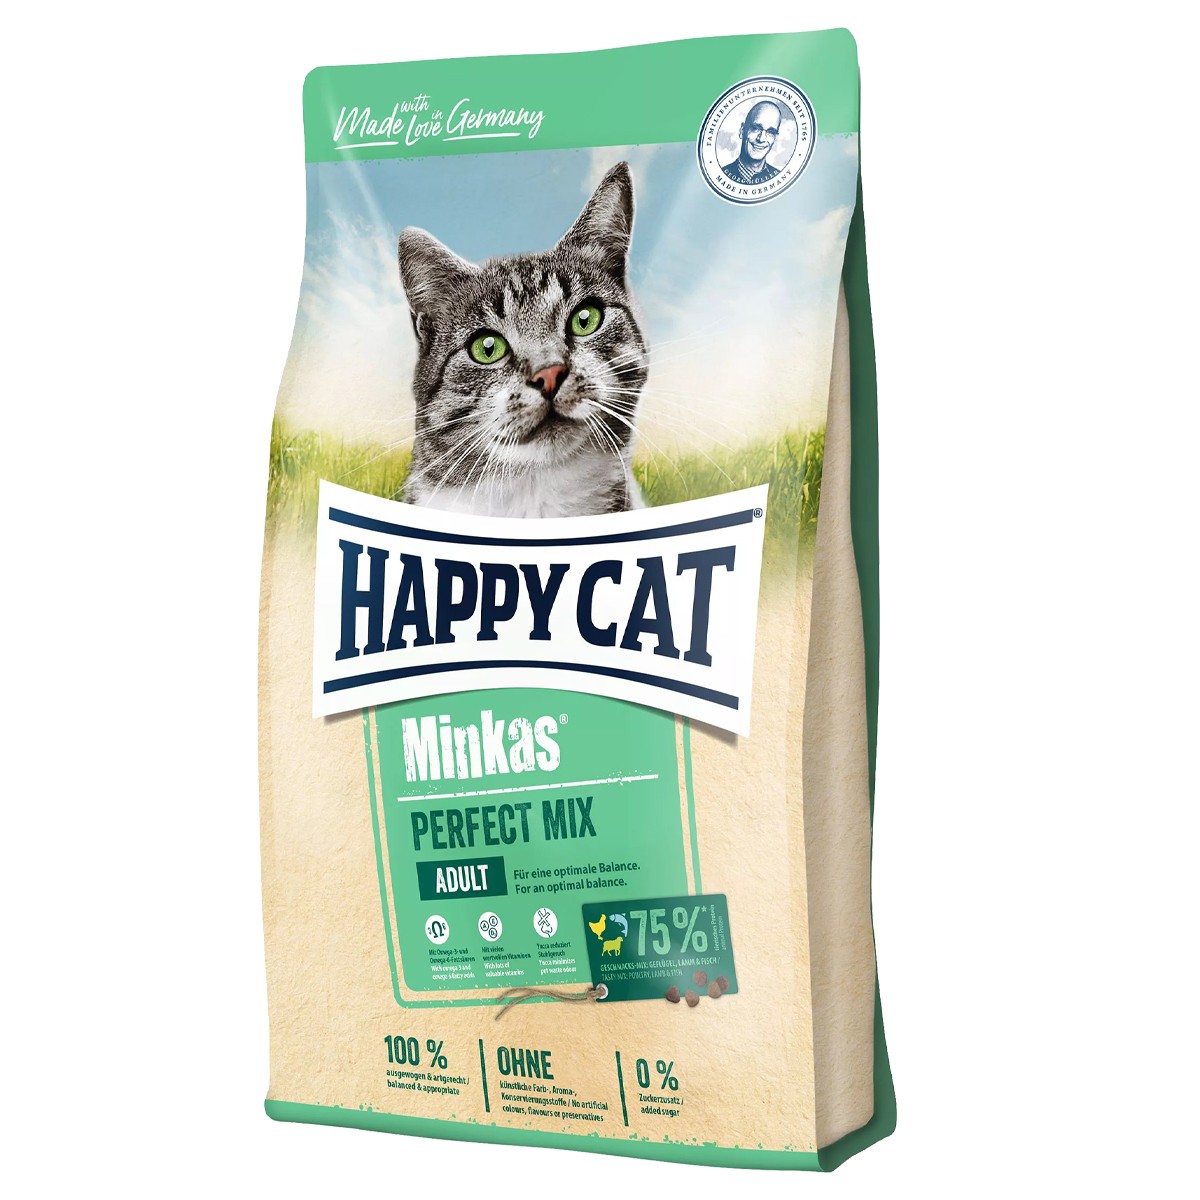 نکته خرید - قیمت روز غذای گربه هپی کت مدل مینکاس پرفکت میکس ادلت وزن 10 کیلوگرم خرید